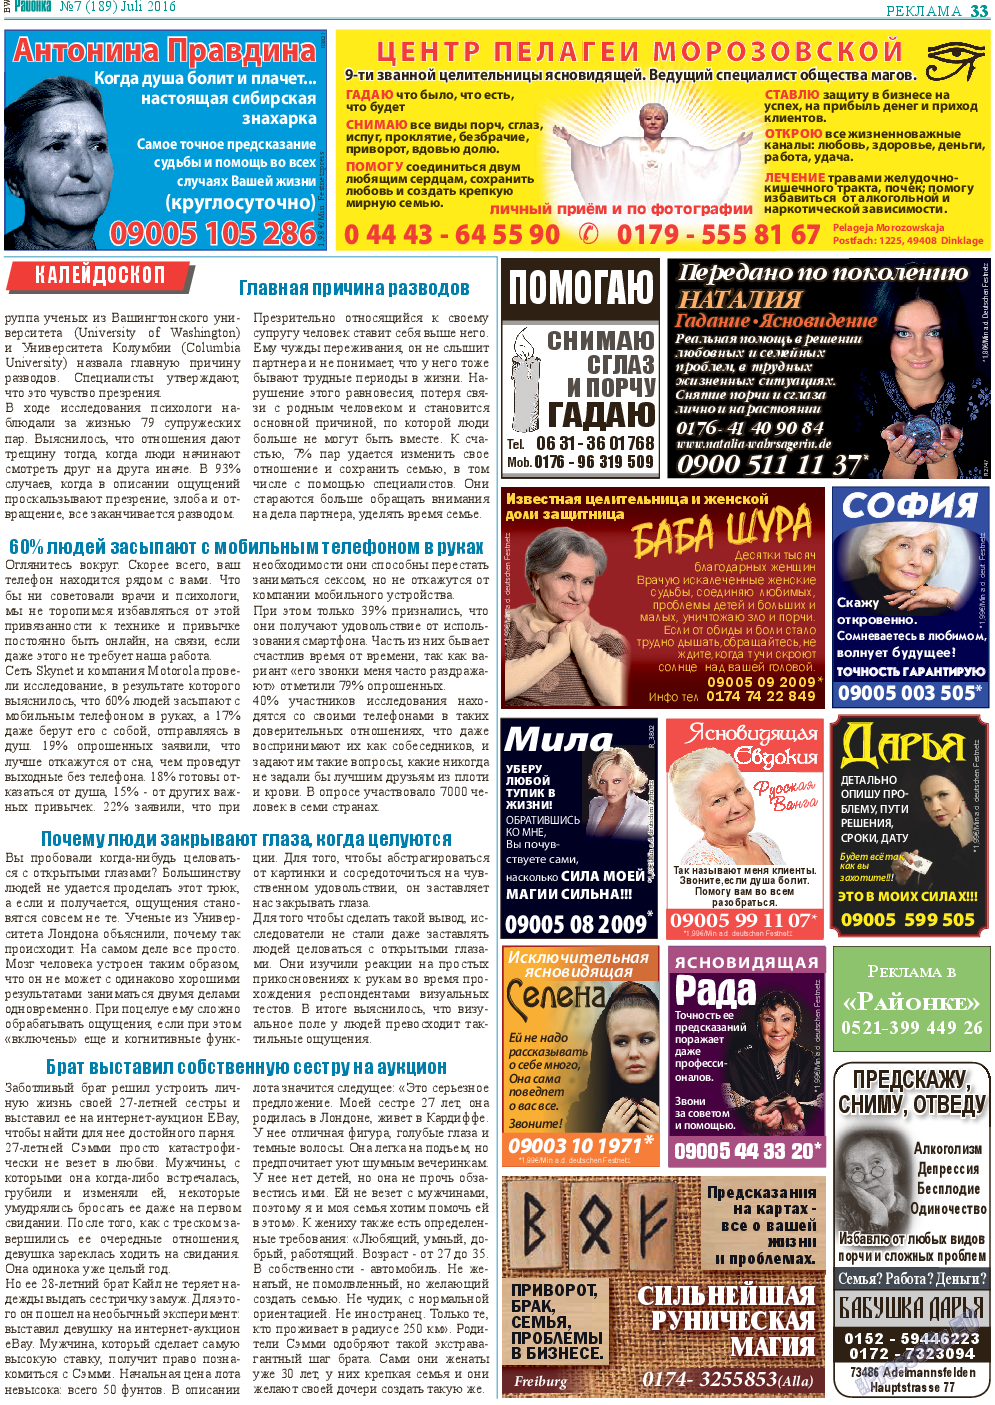 Районка-Süd-West, газета. 2016 №7 стр.33